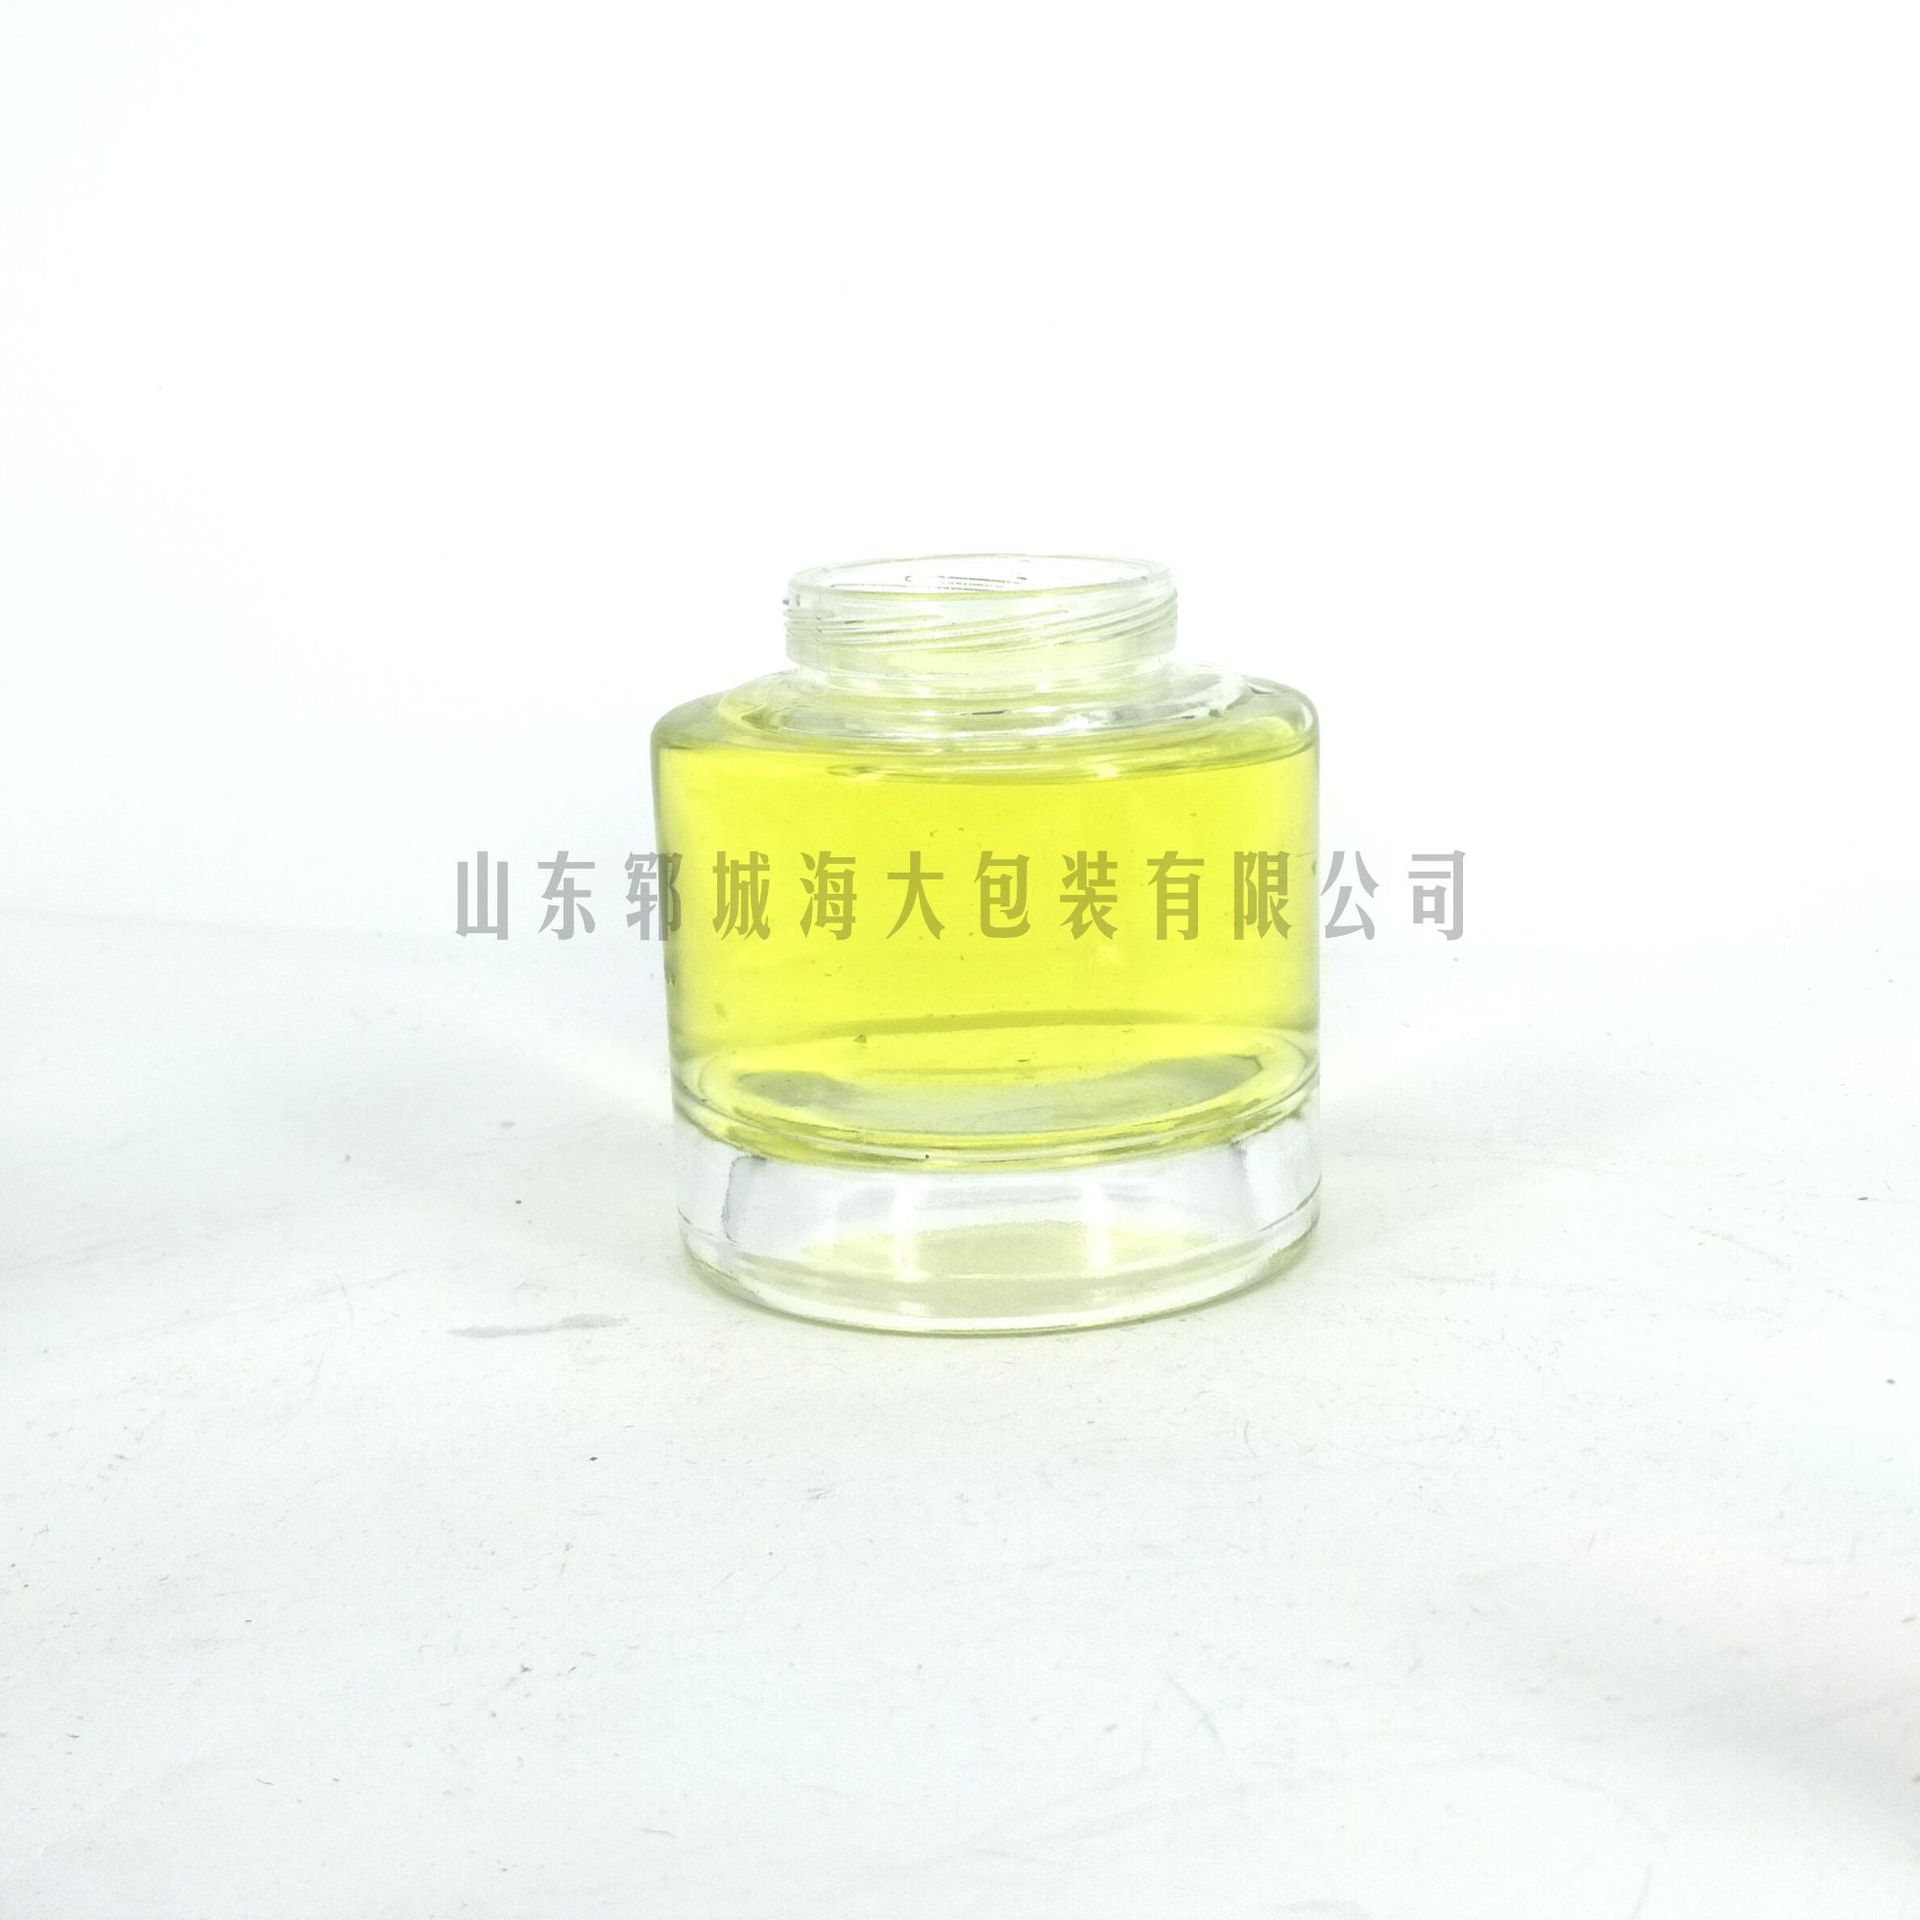 高档 晶白料 圆形蜜蜂瓶 100ml 蜂蜜瓶玻璃 500ml  蜂蜜玻璃瓶示例图7